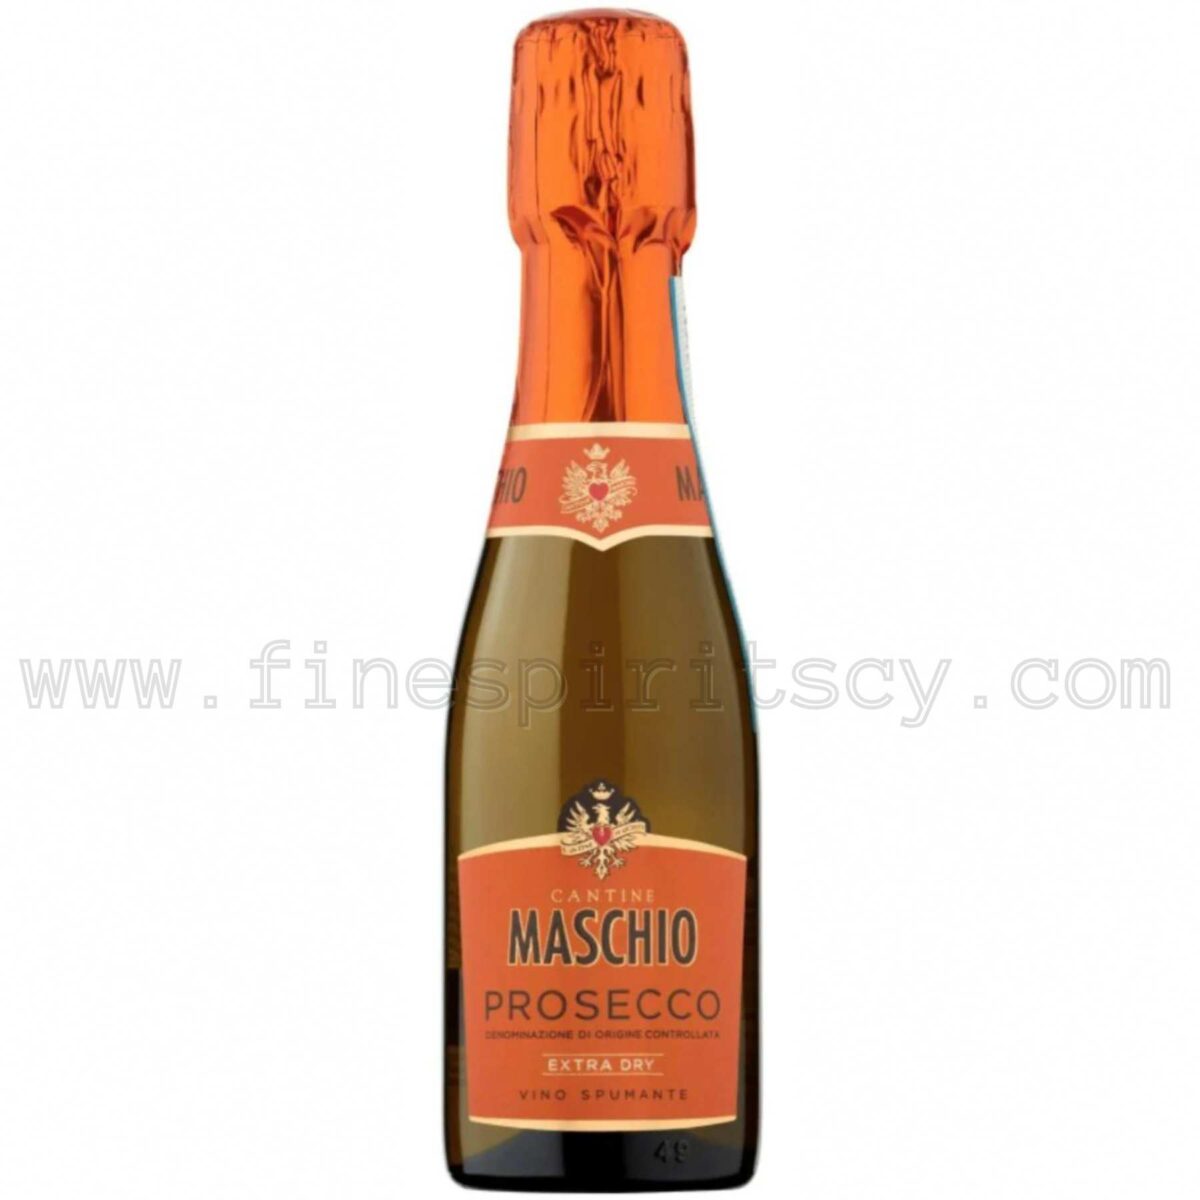 Cantine Maschio Prosecco DOC Treviso Spumante CY Vino 200ml 20cl 0.2l Price